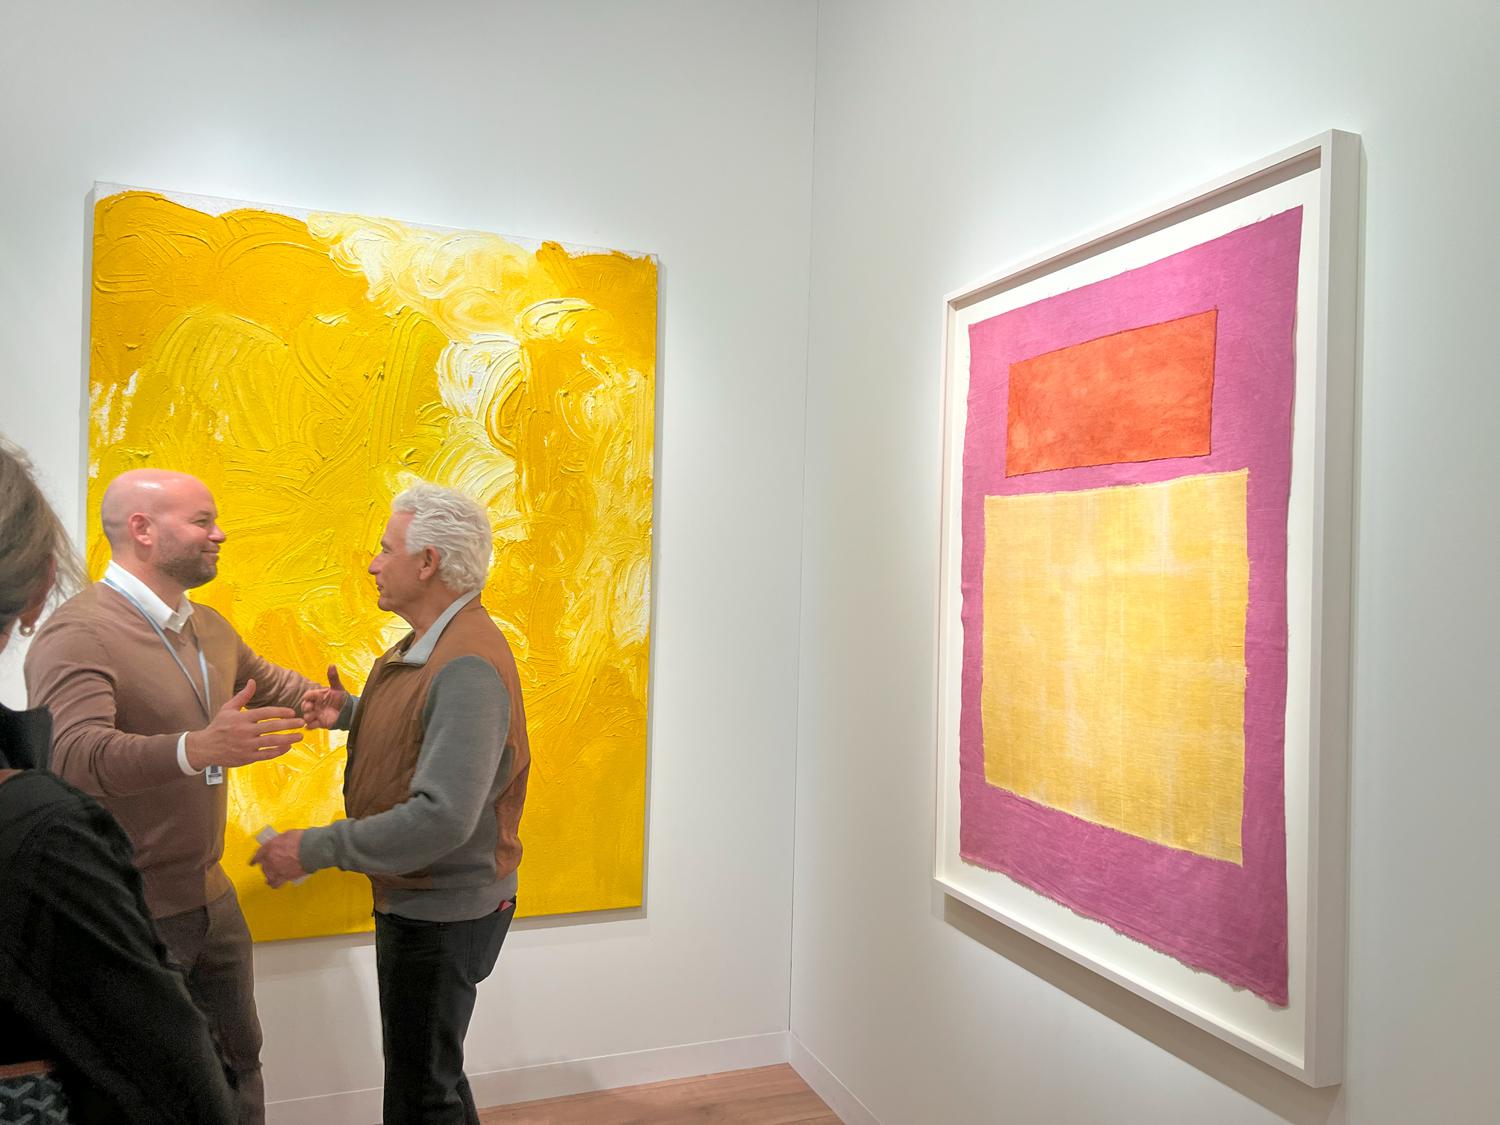 Вид экспозиции стенда Pace Gallery, выстроенной вокруг Ротко. Справа&nbsp;&mdash; Yto Barrada, Untitled (R-Y/P), 2023